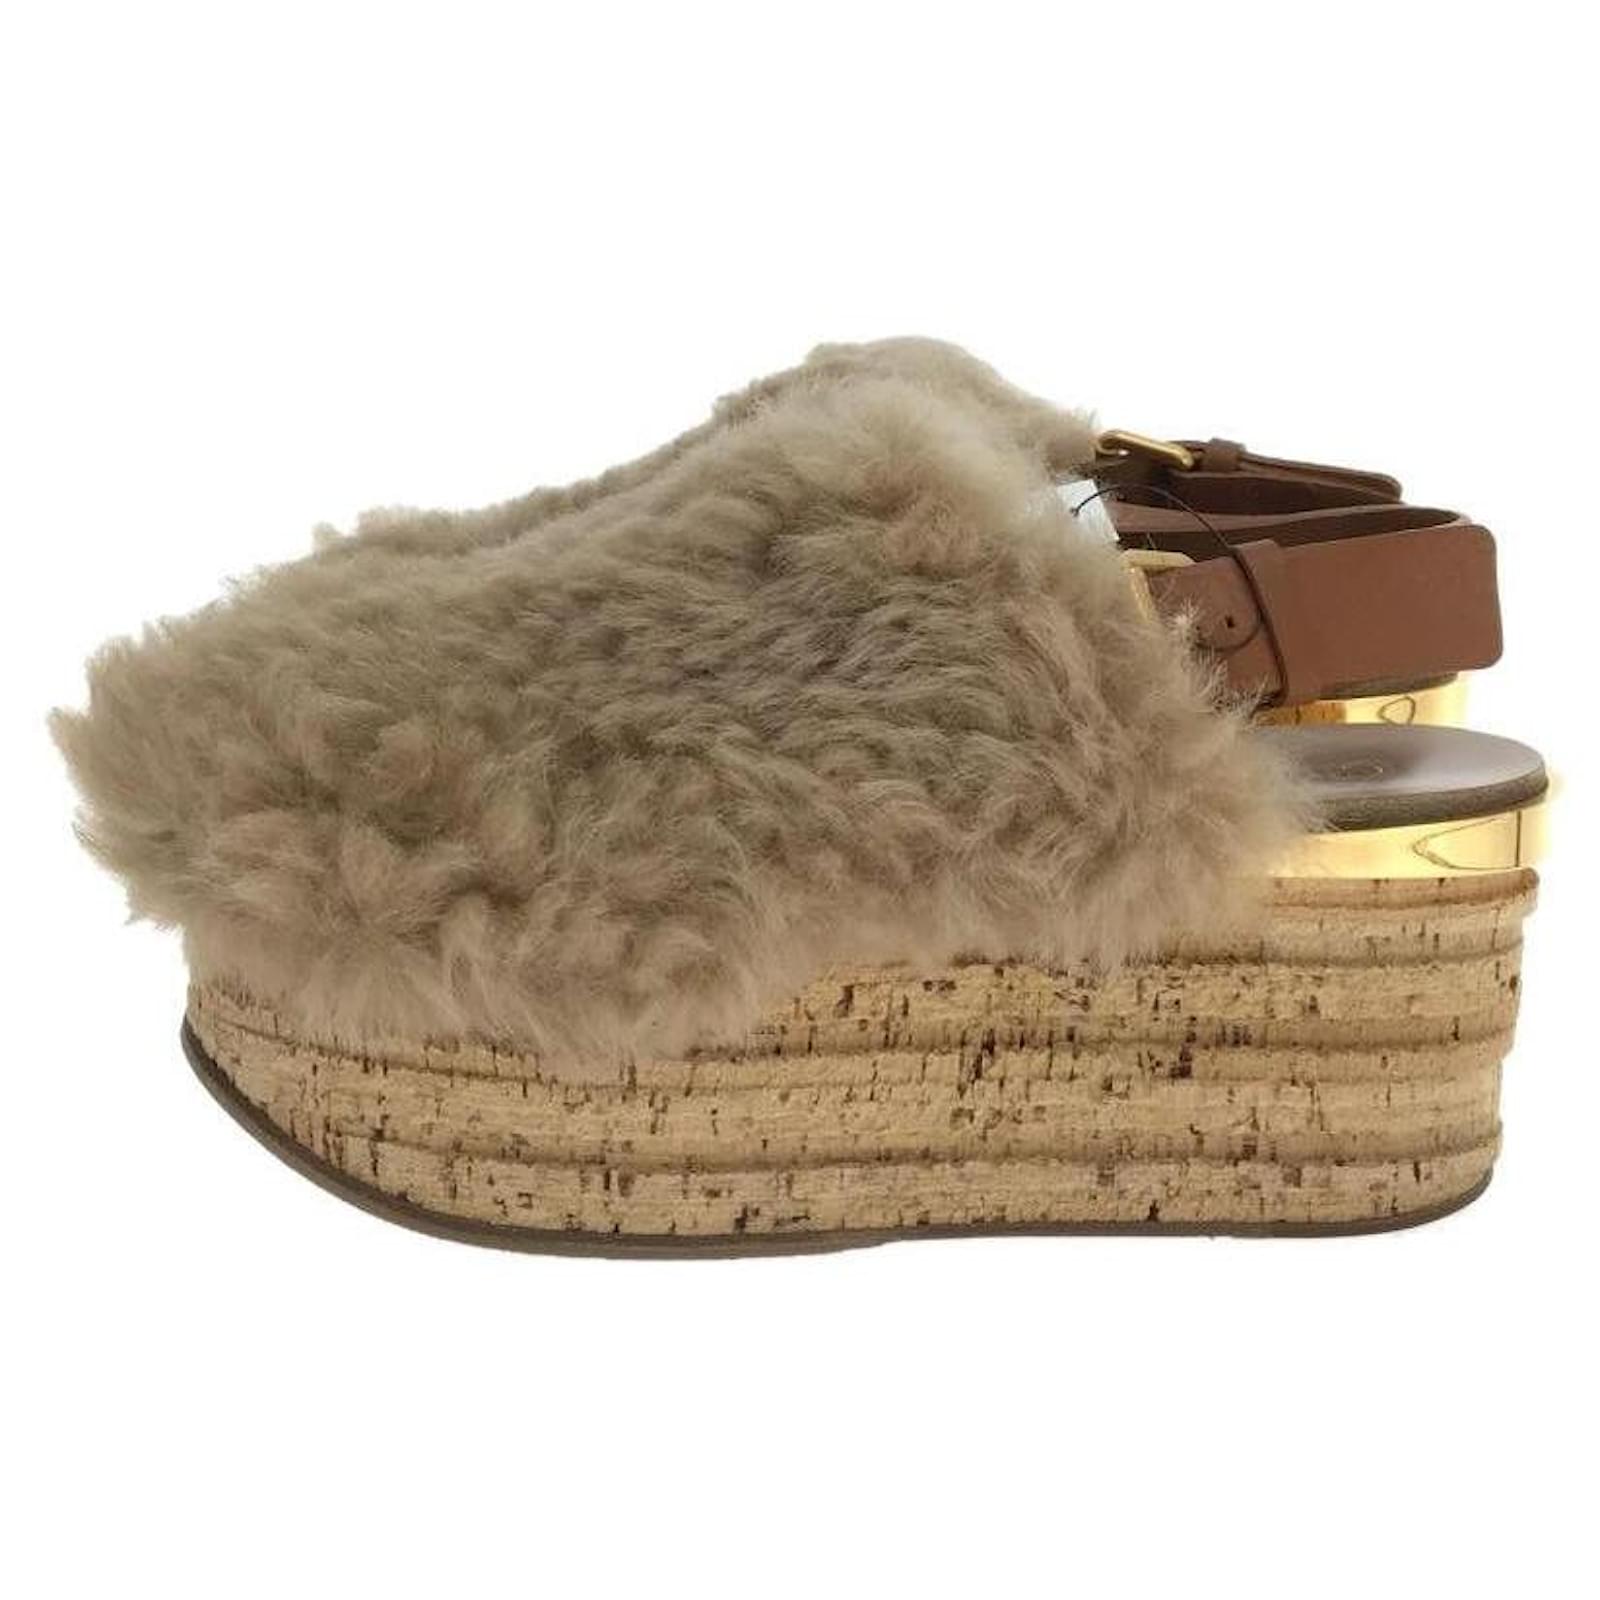 Chloé Chloe CAMILLE / Mouton cork sole sandals / 37 / beige ref